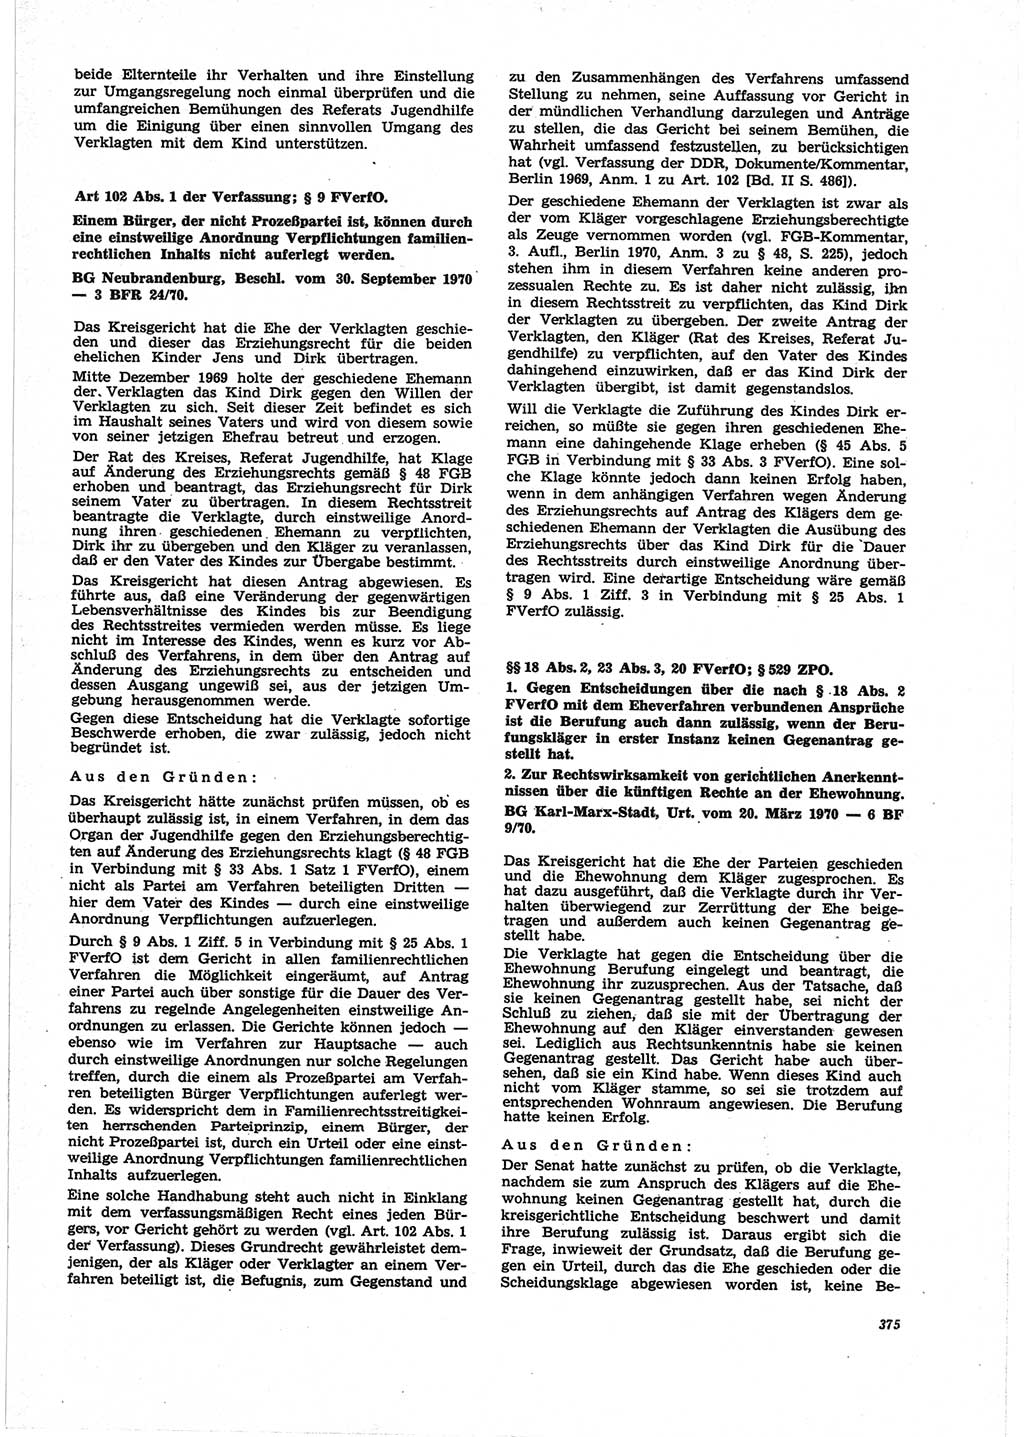 Neue Justiz (NJ), Zeitschrift für Recht und Rechtswissenschaft [Deutsche Demokratische Republik (DDR)], 25. Jahrgang 1971, Seite 375 (NJ DDR 1971, S. 375)